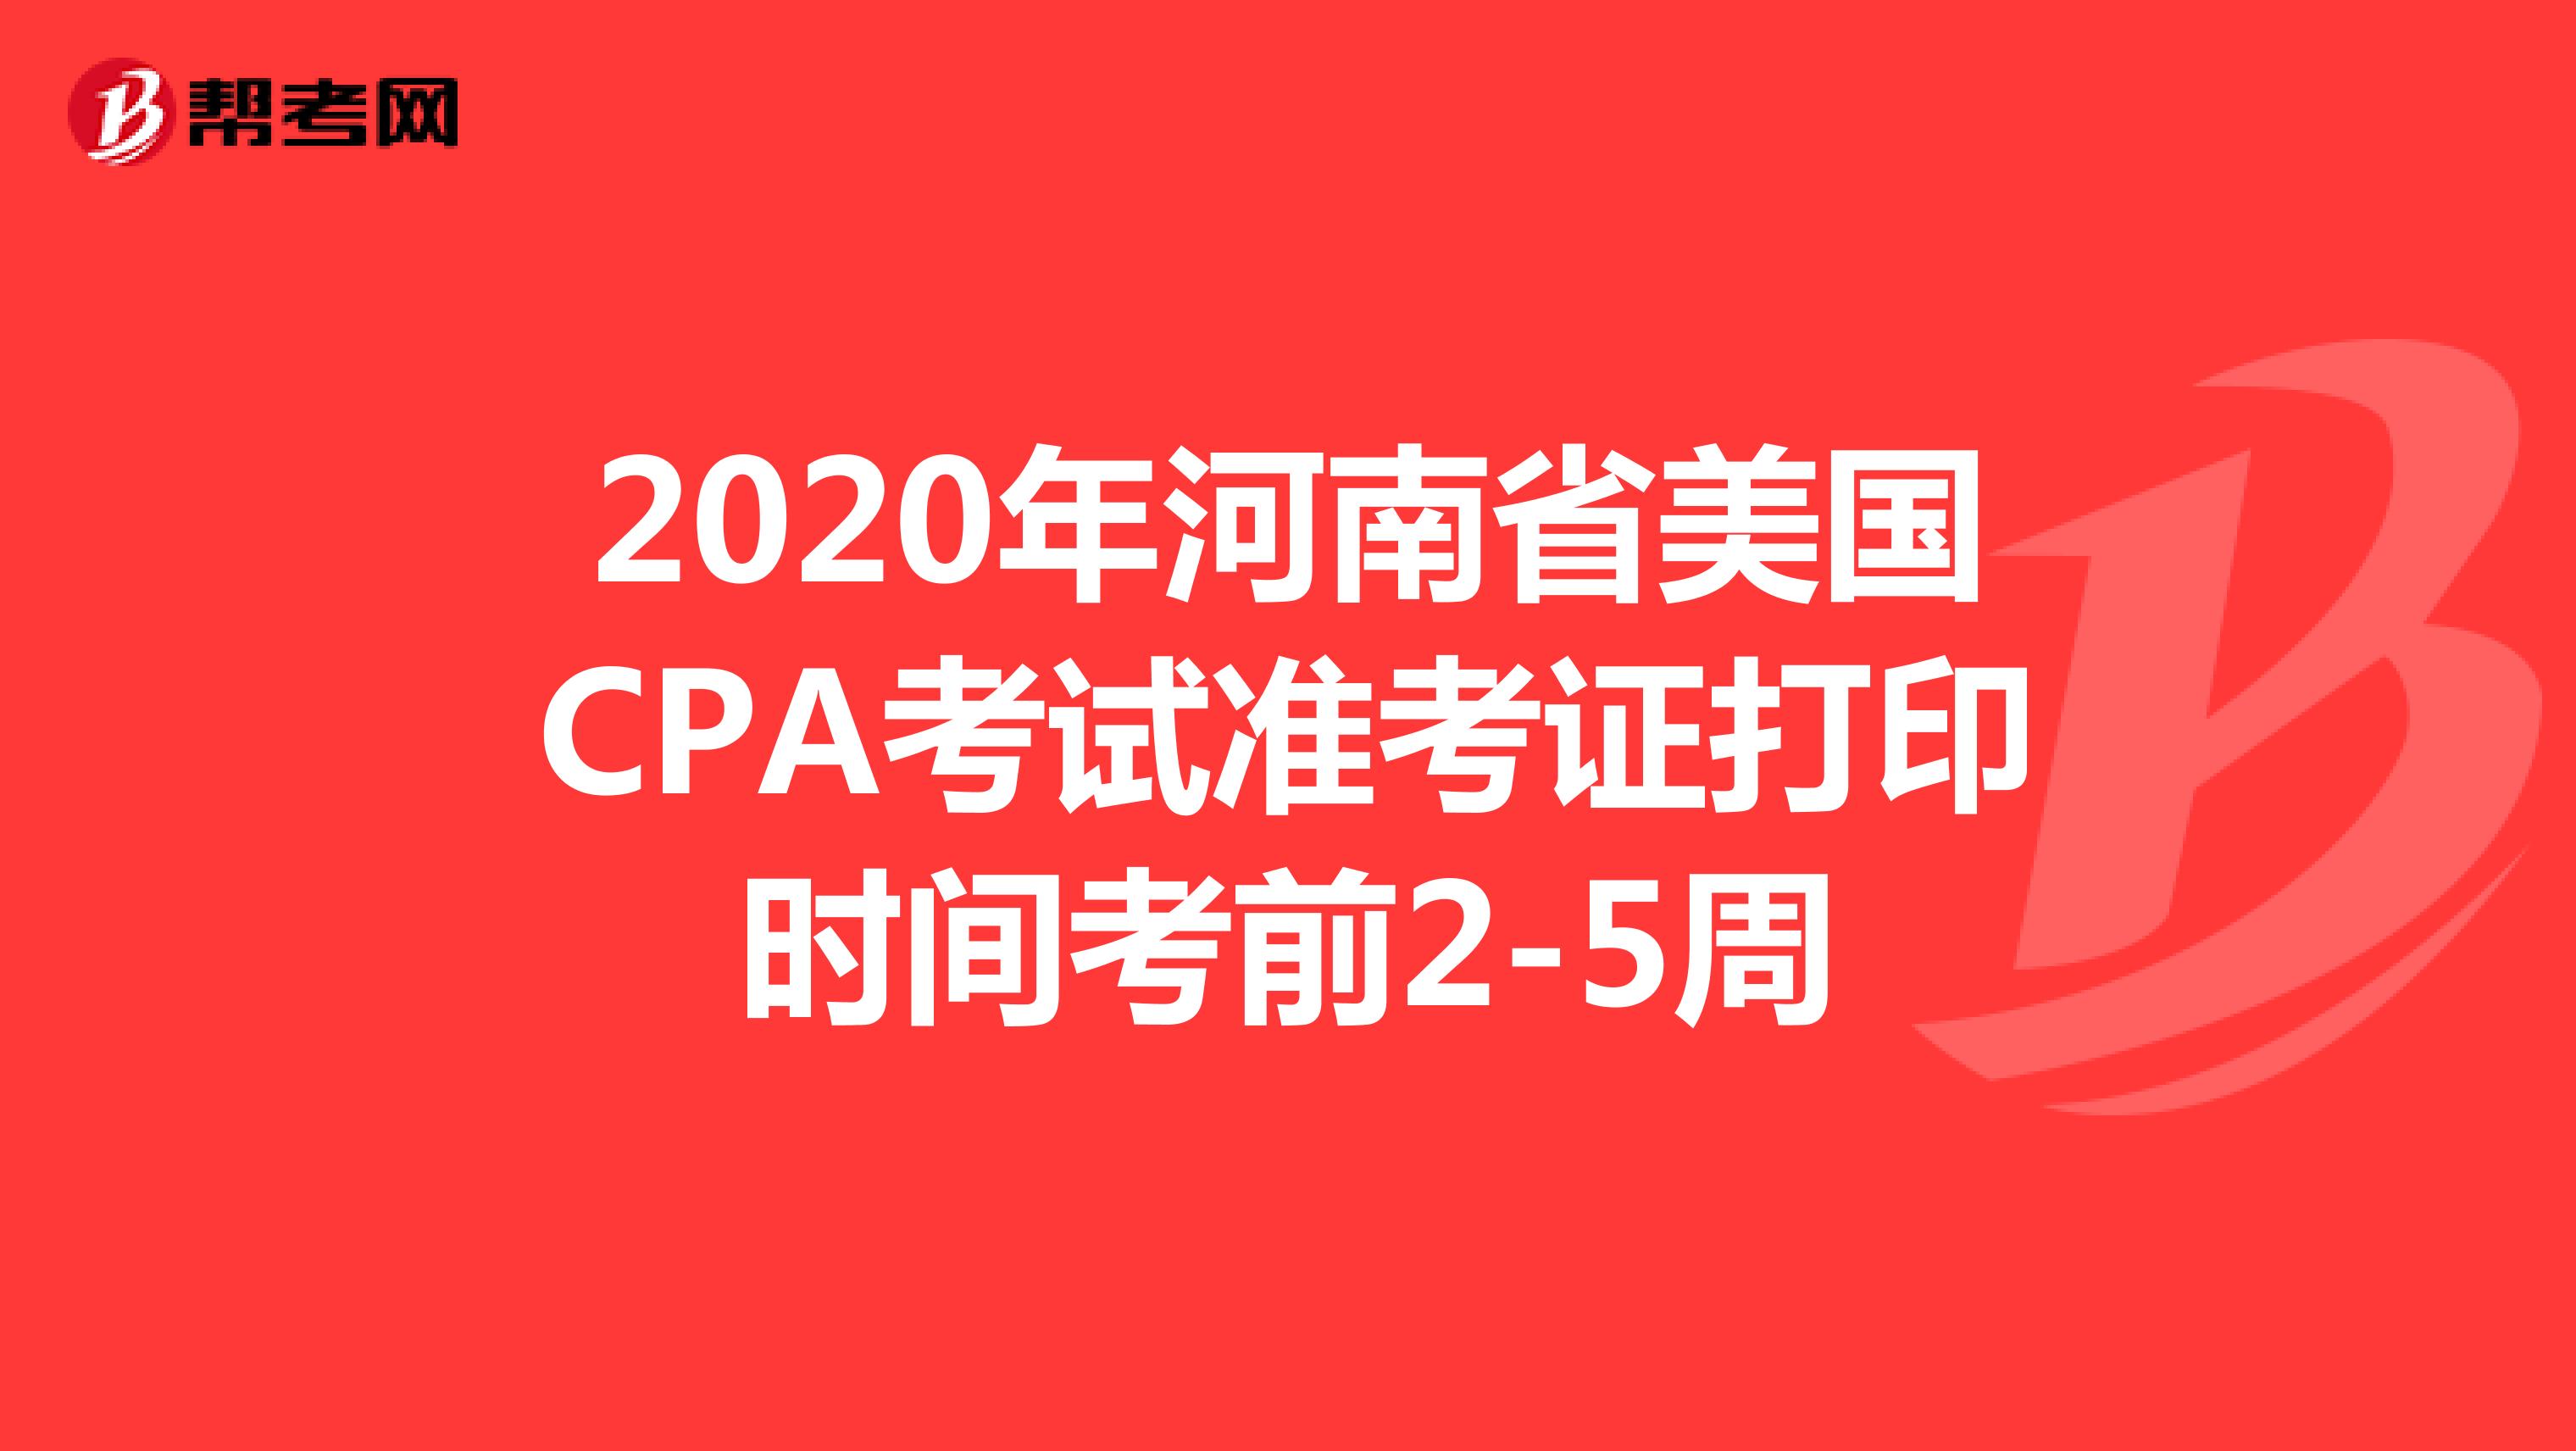 2020年河南省美国CPA考试准考证打印时间考前2-5周